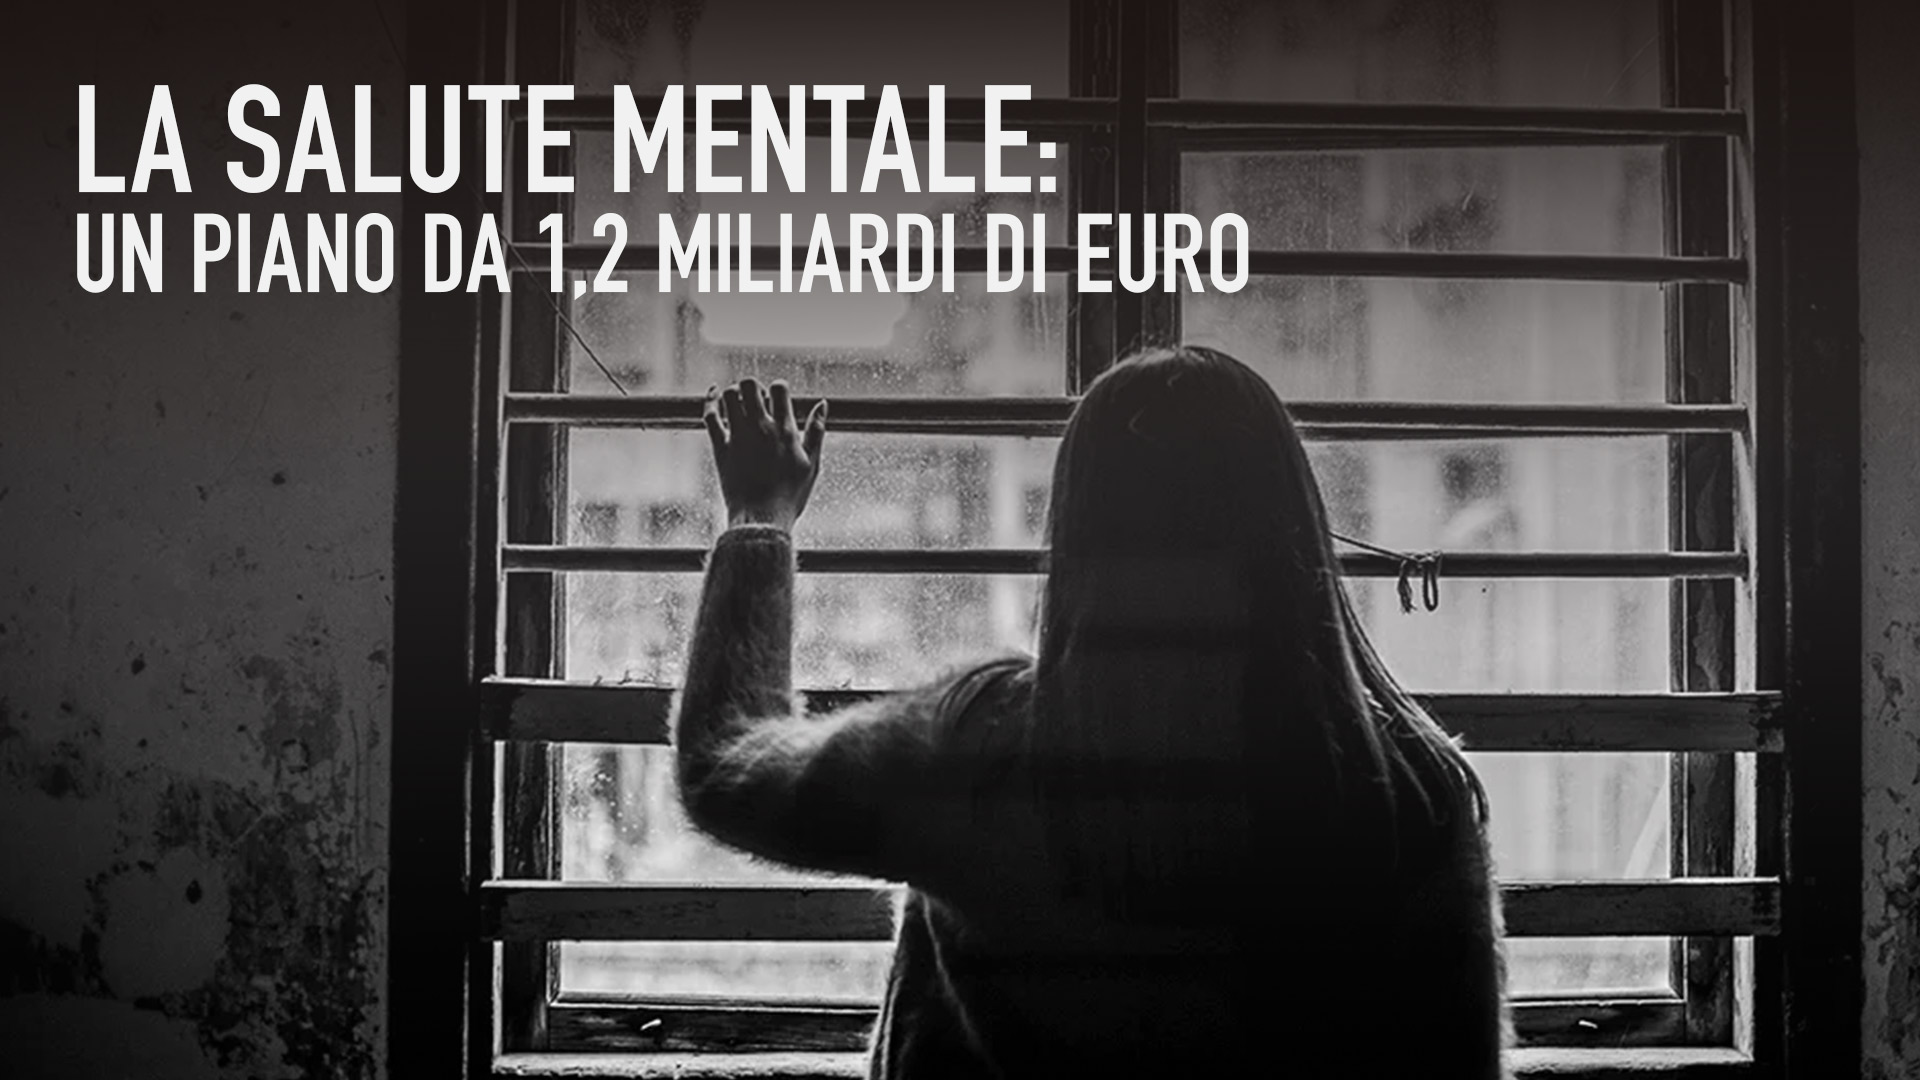 La salute mentale: un piano da 1,2 miliardi di Euro